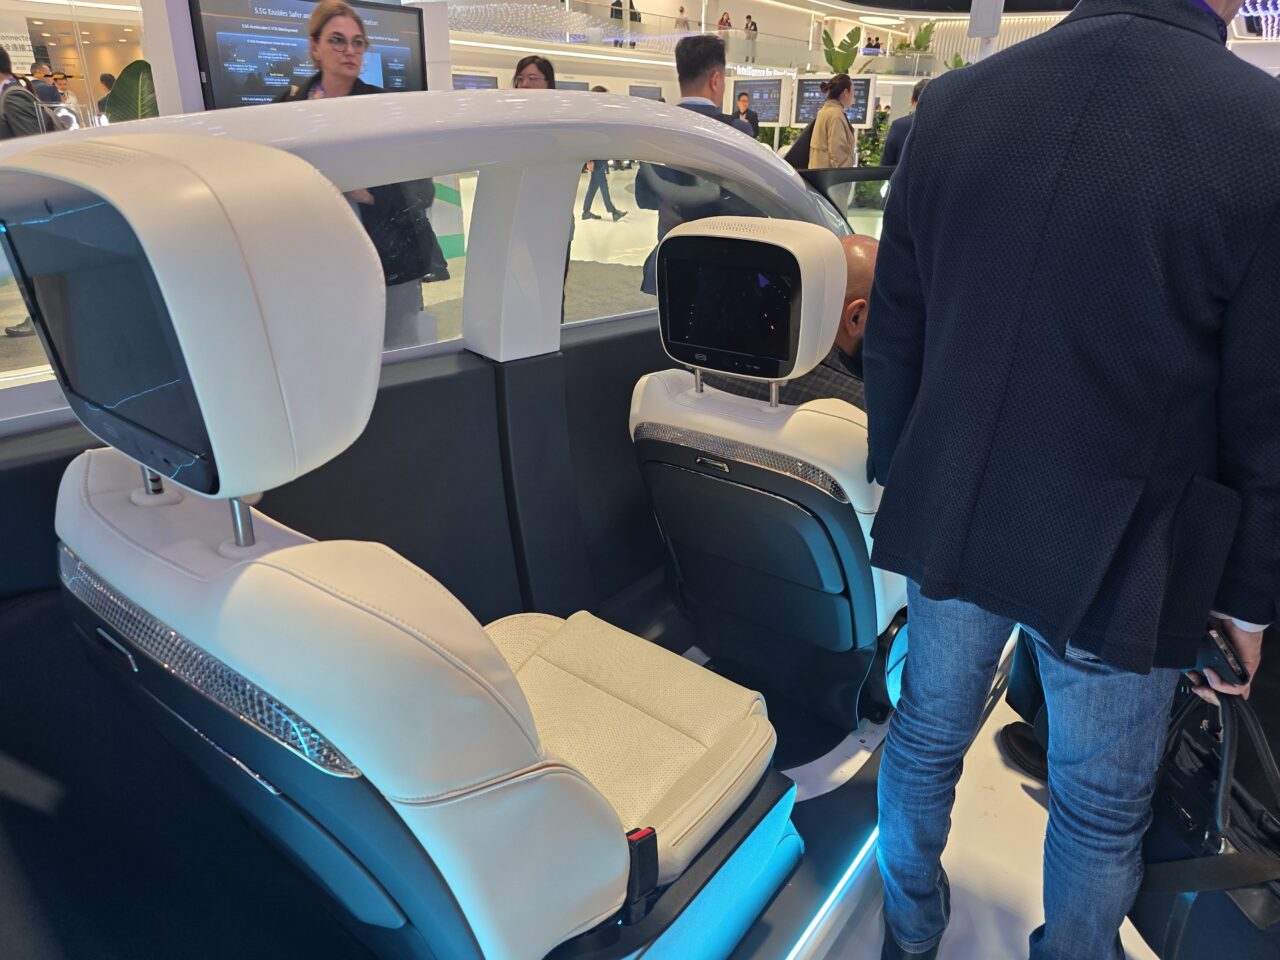 Stoisko Huawei 5.5G na targach MWC 2024. Wnętrze futurystycznego pojazdu z białymi fotelami i zaawansowanymi wyświetlaczami, otoczone ludźmi oglądającymi ekspozycję.